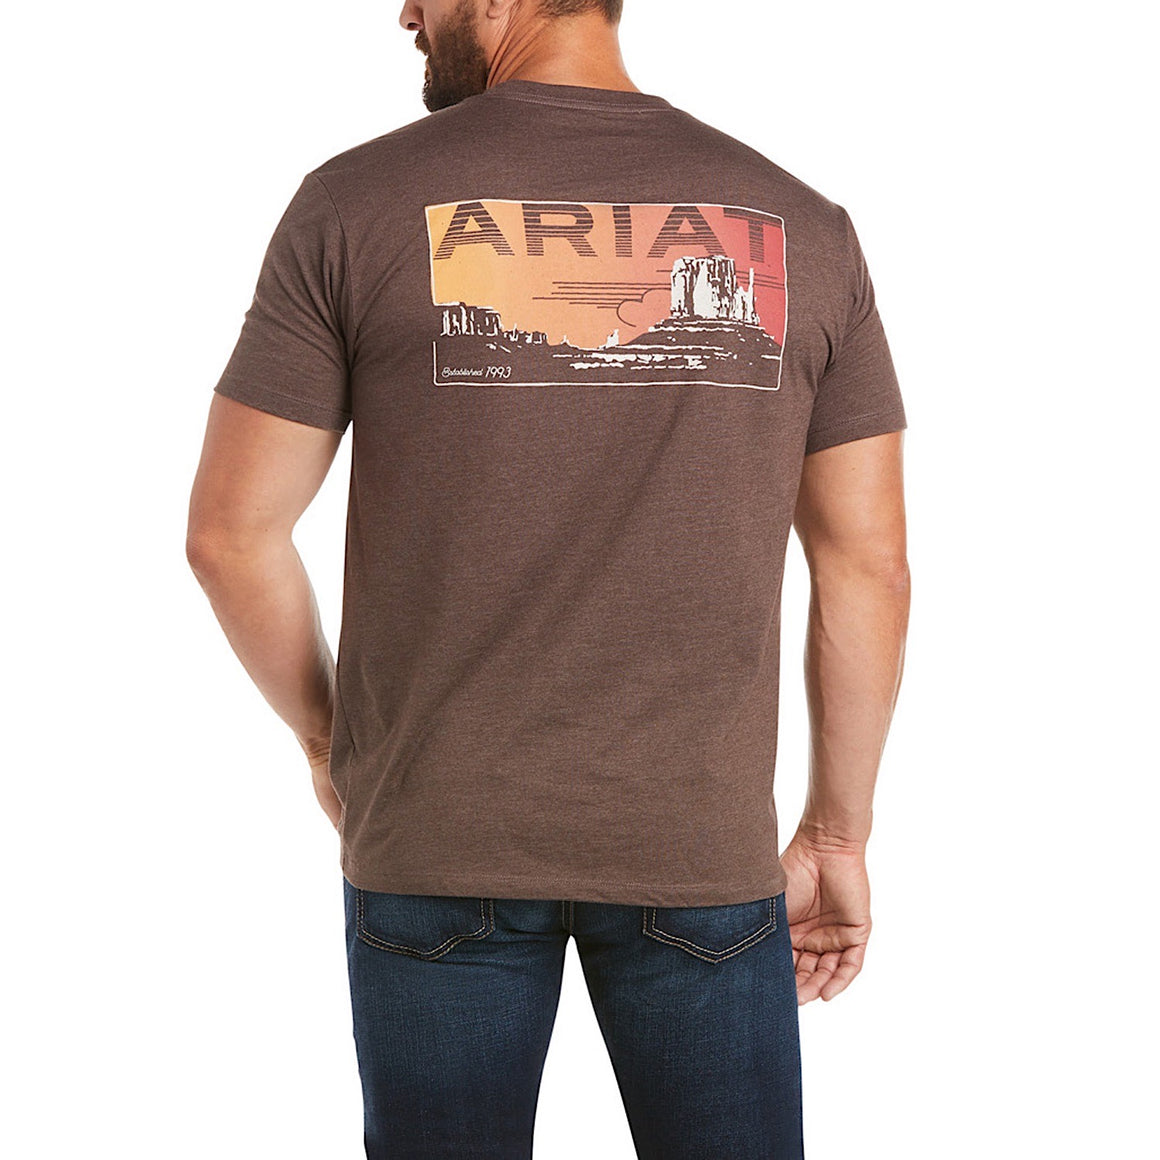 Buy Ariat Mens T-Shirts - The Stable Door